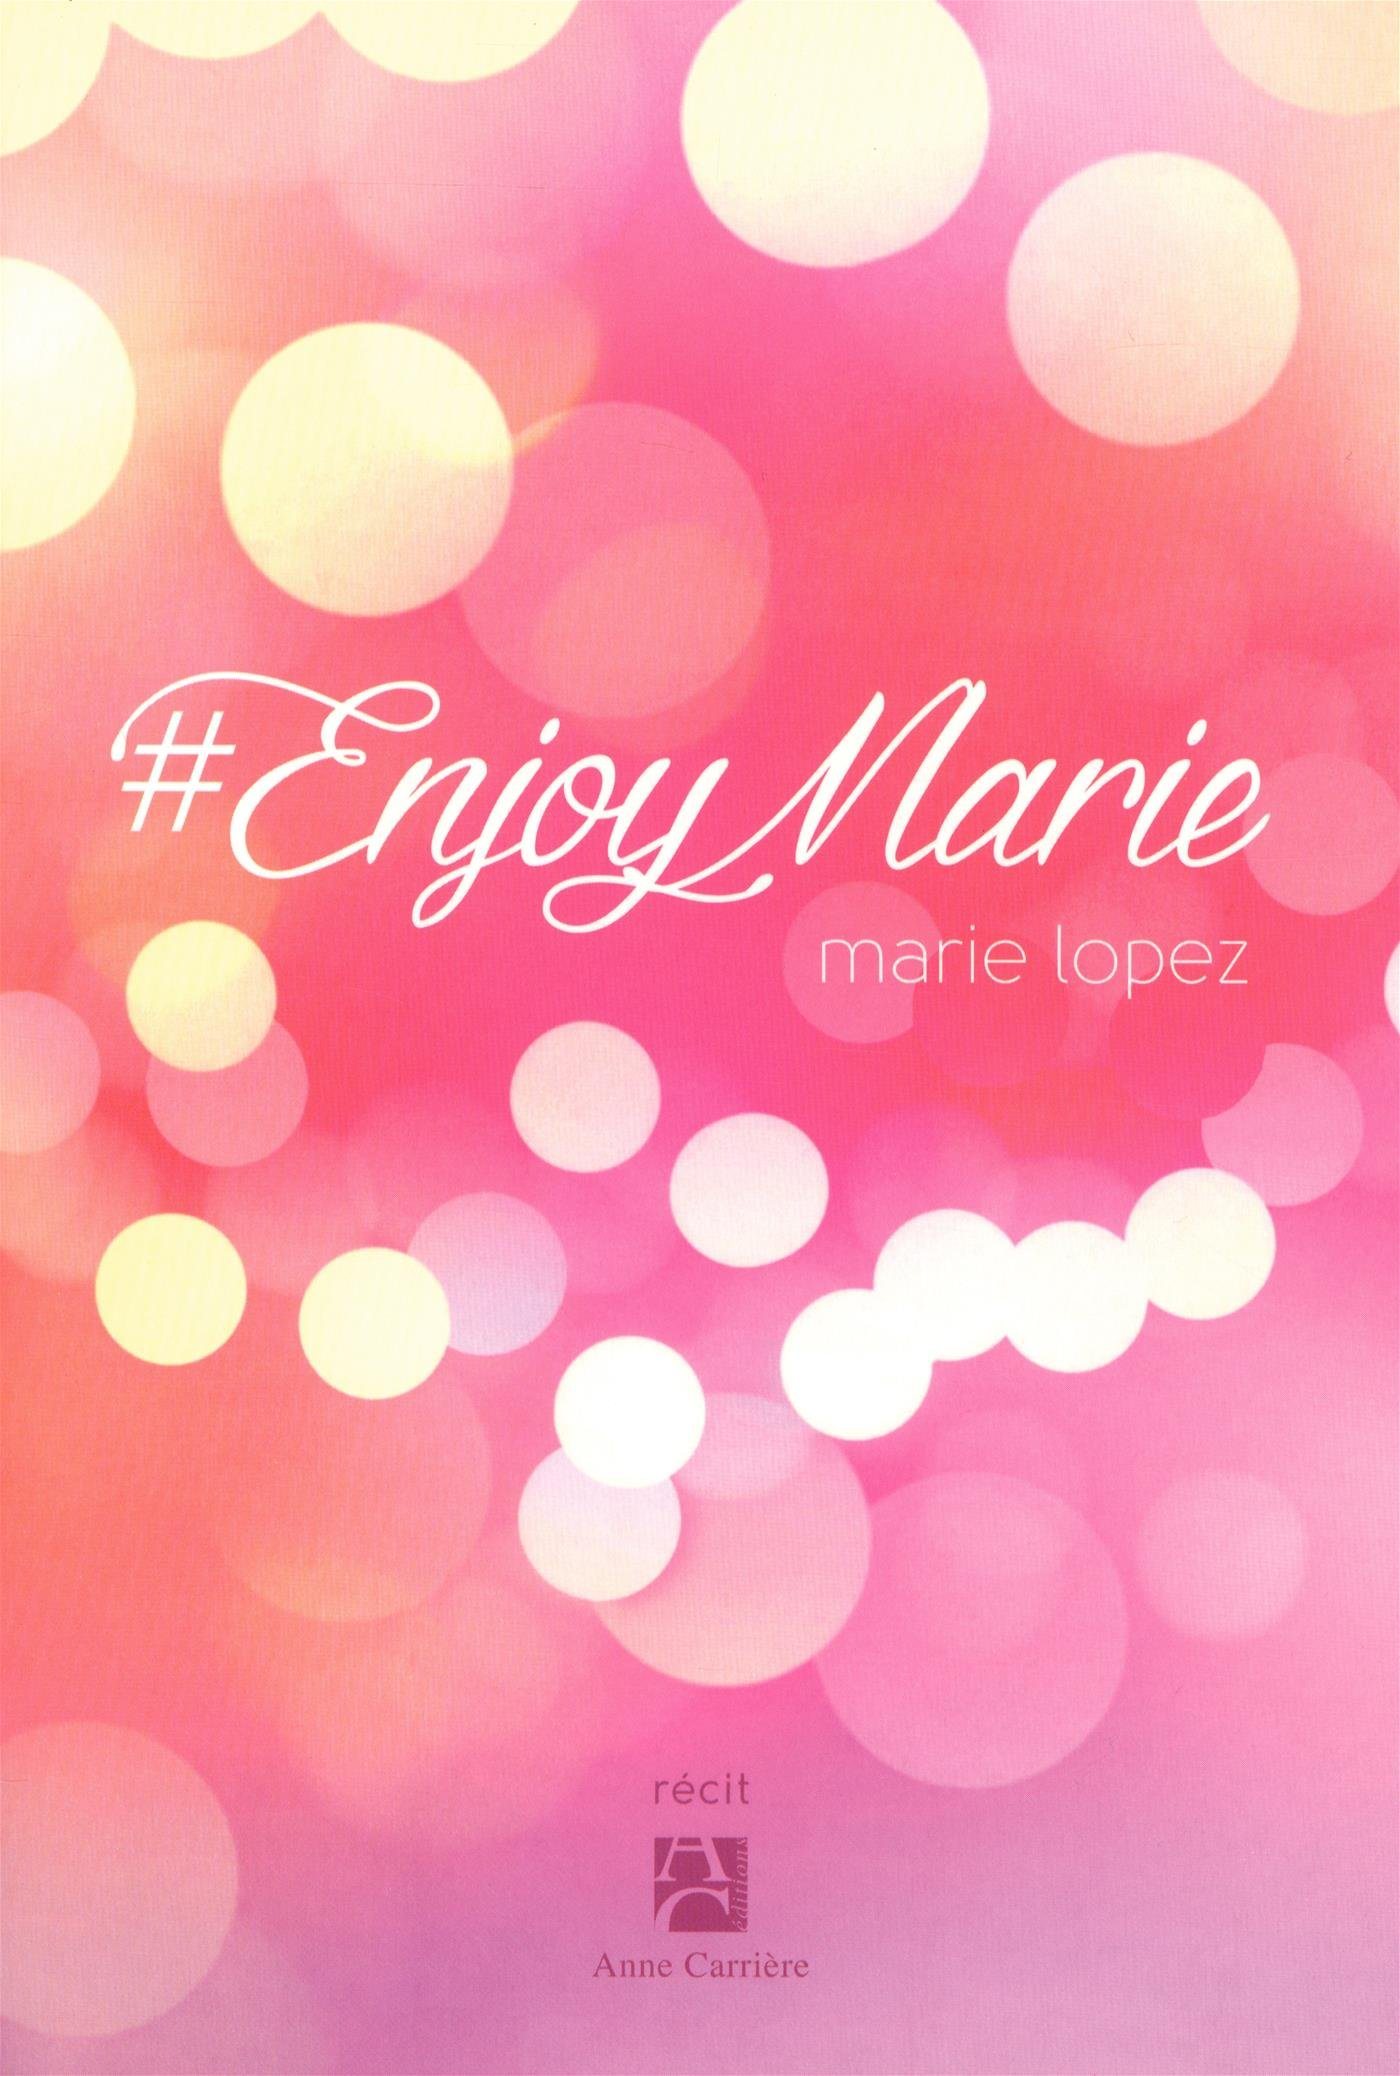 enjoy marie